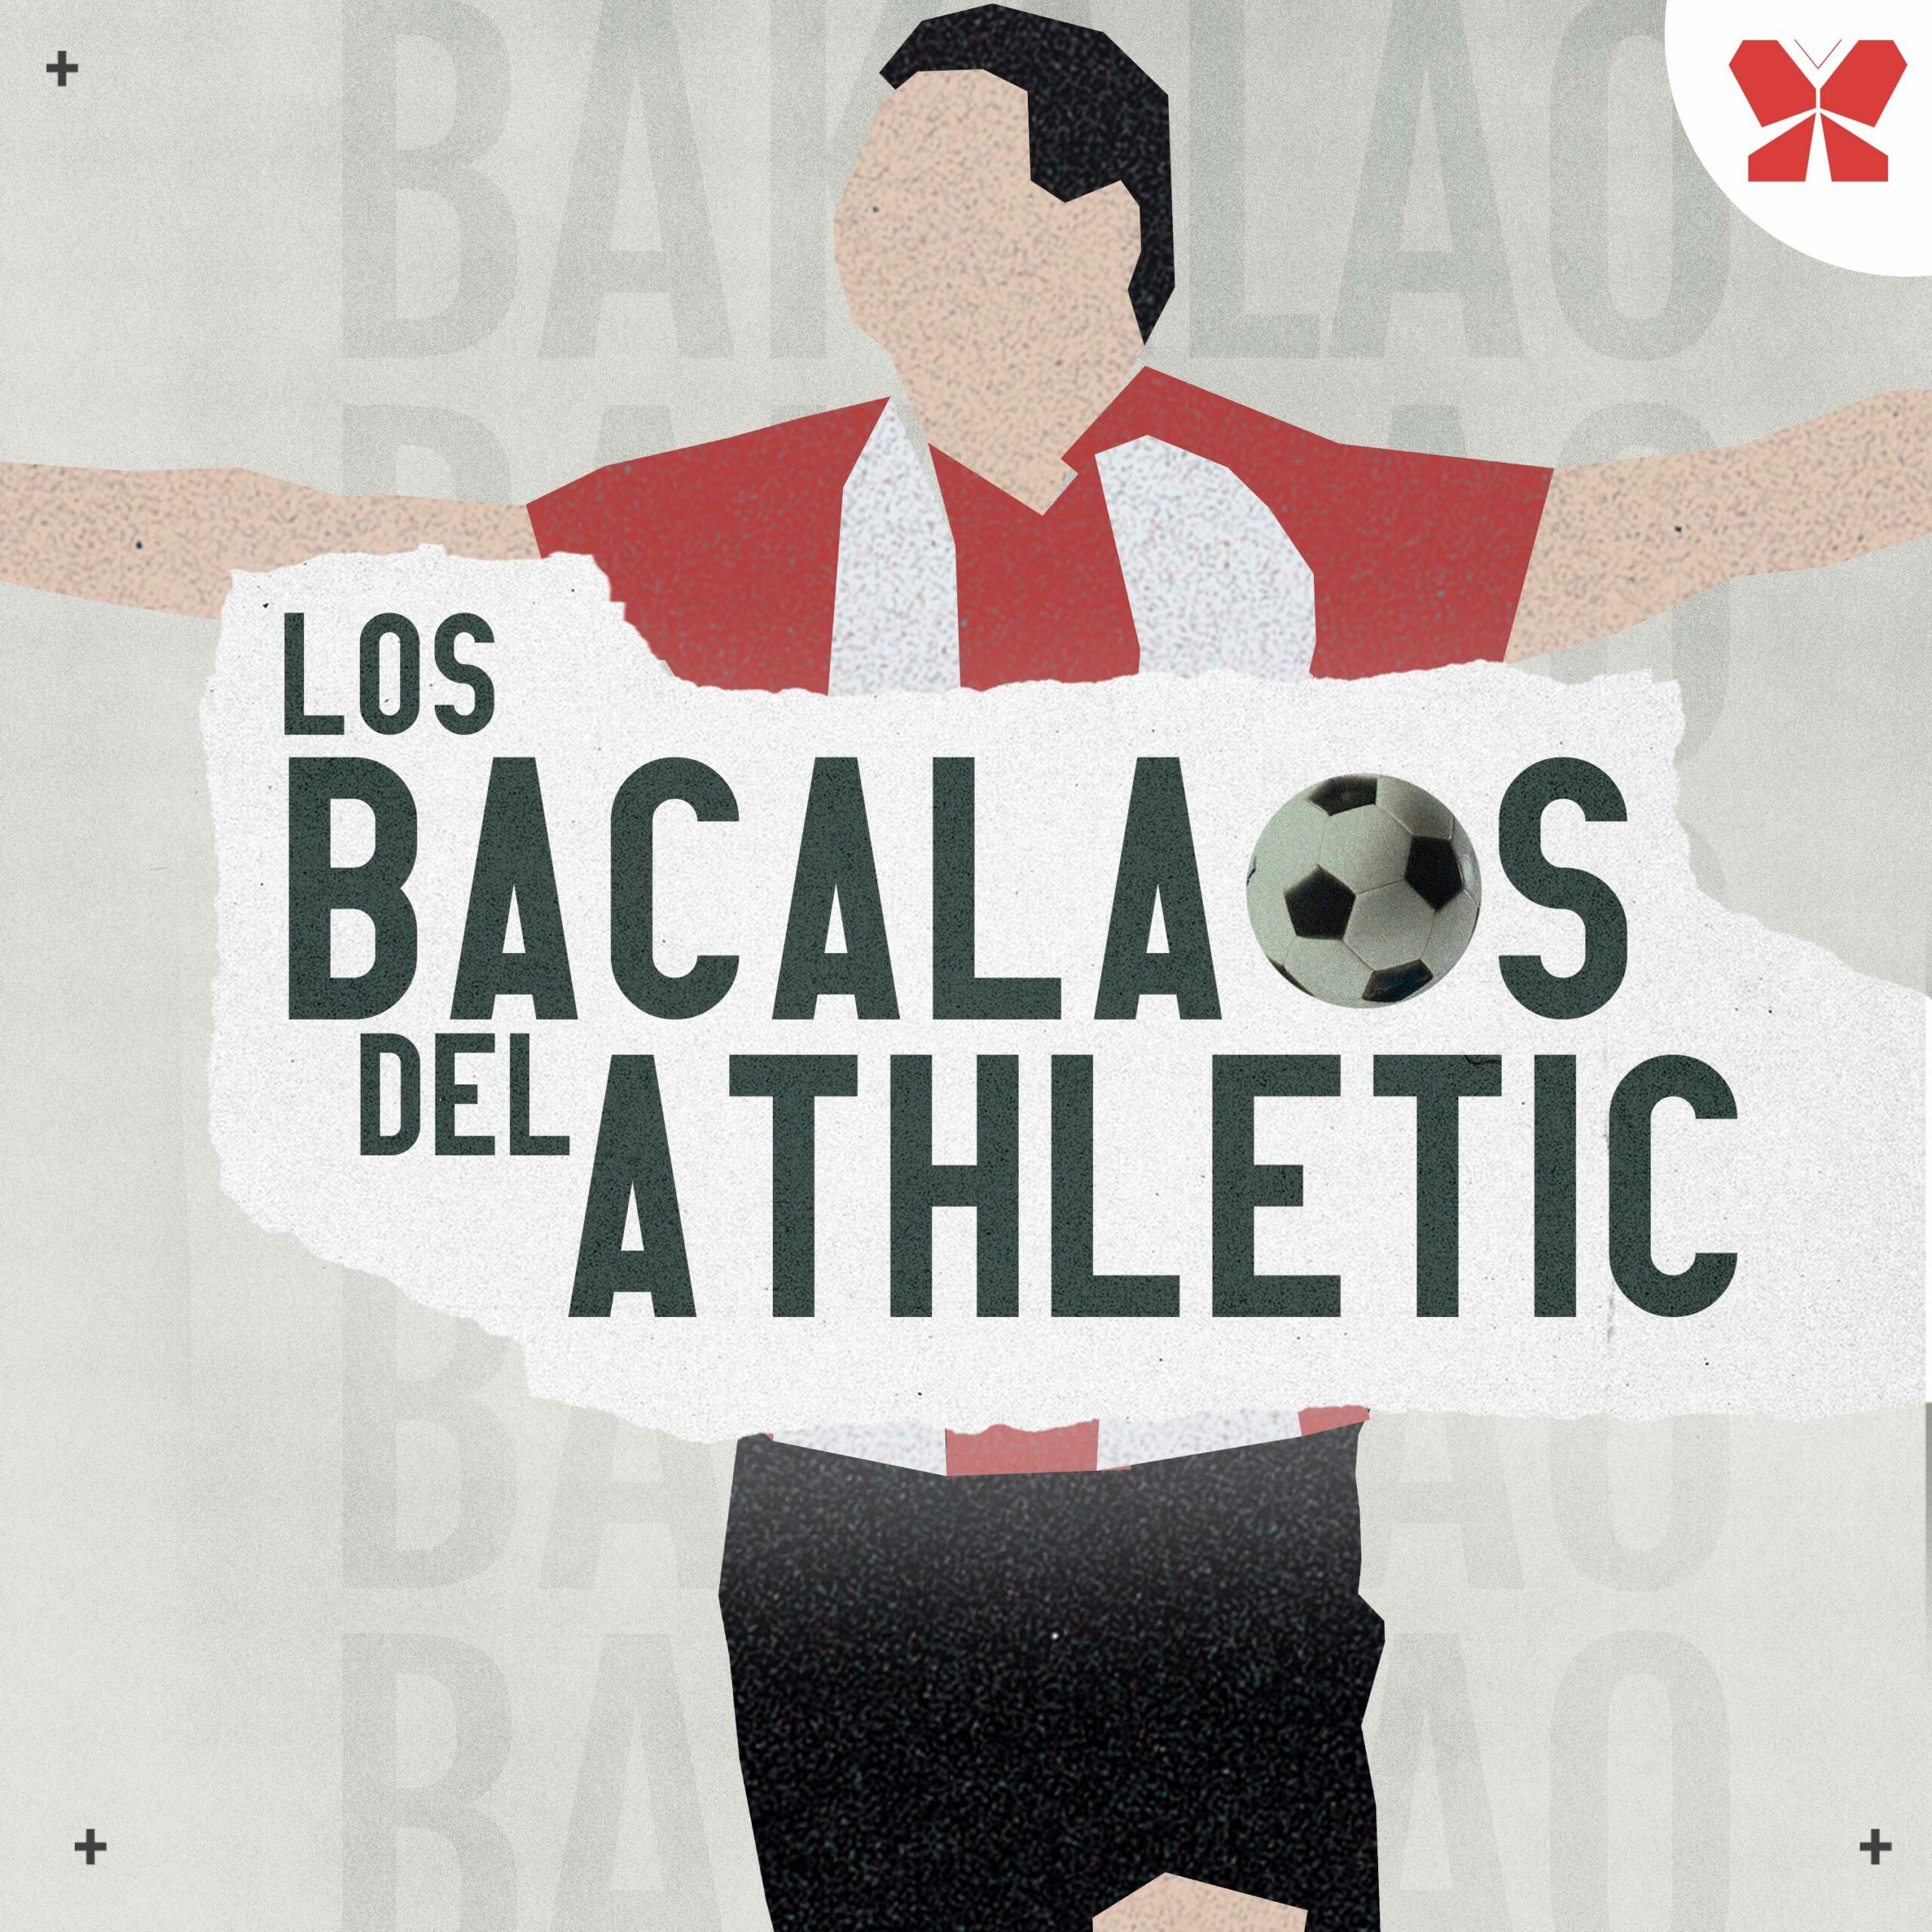 ⚽ Bacalao de Berenguer en un mano a mano | UD Alzira 0-2 Athletic Club